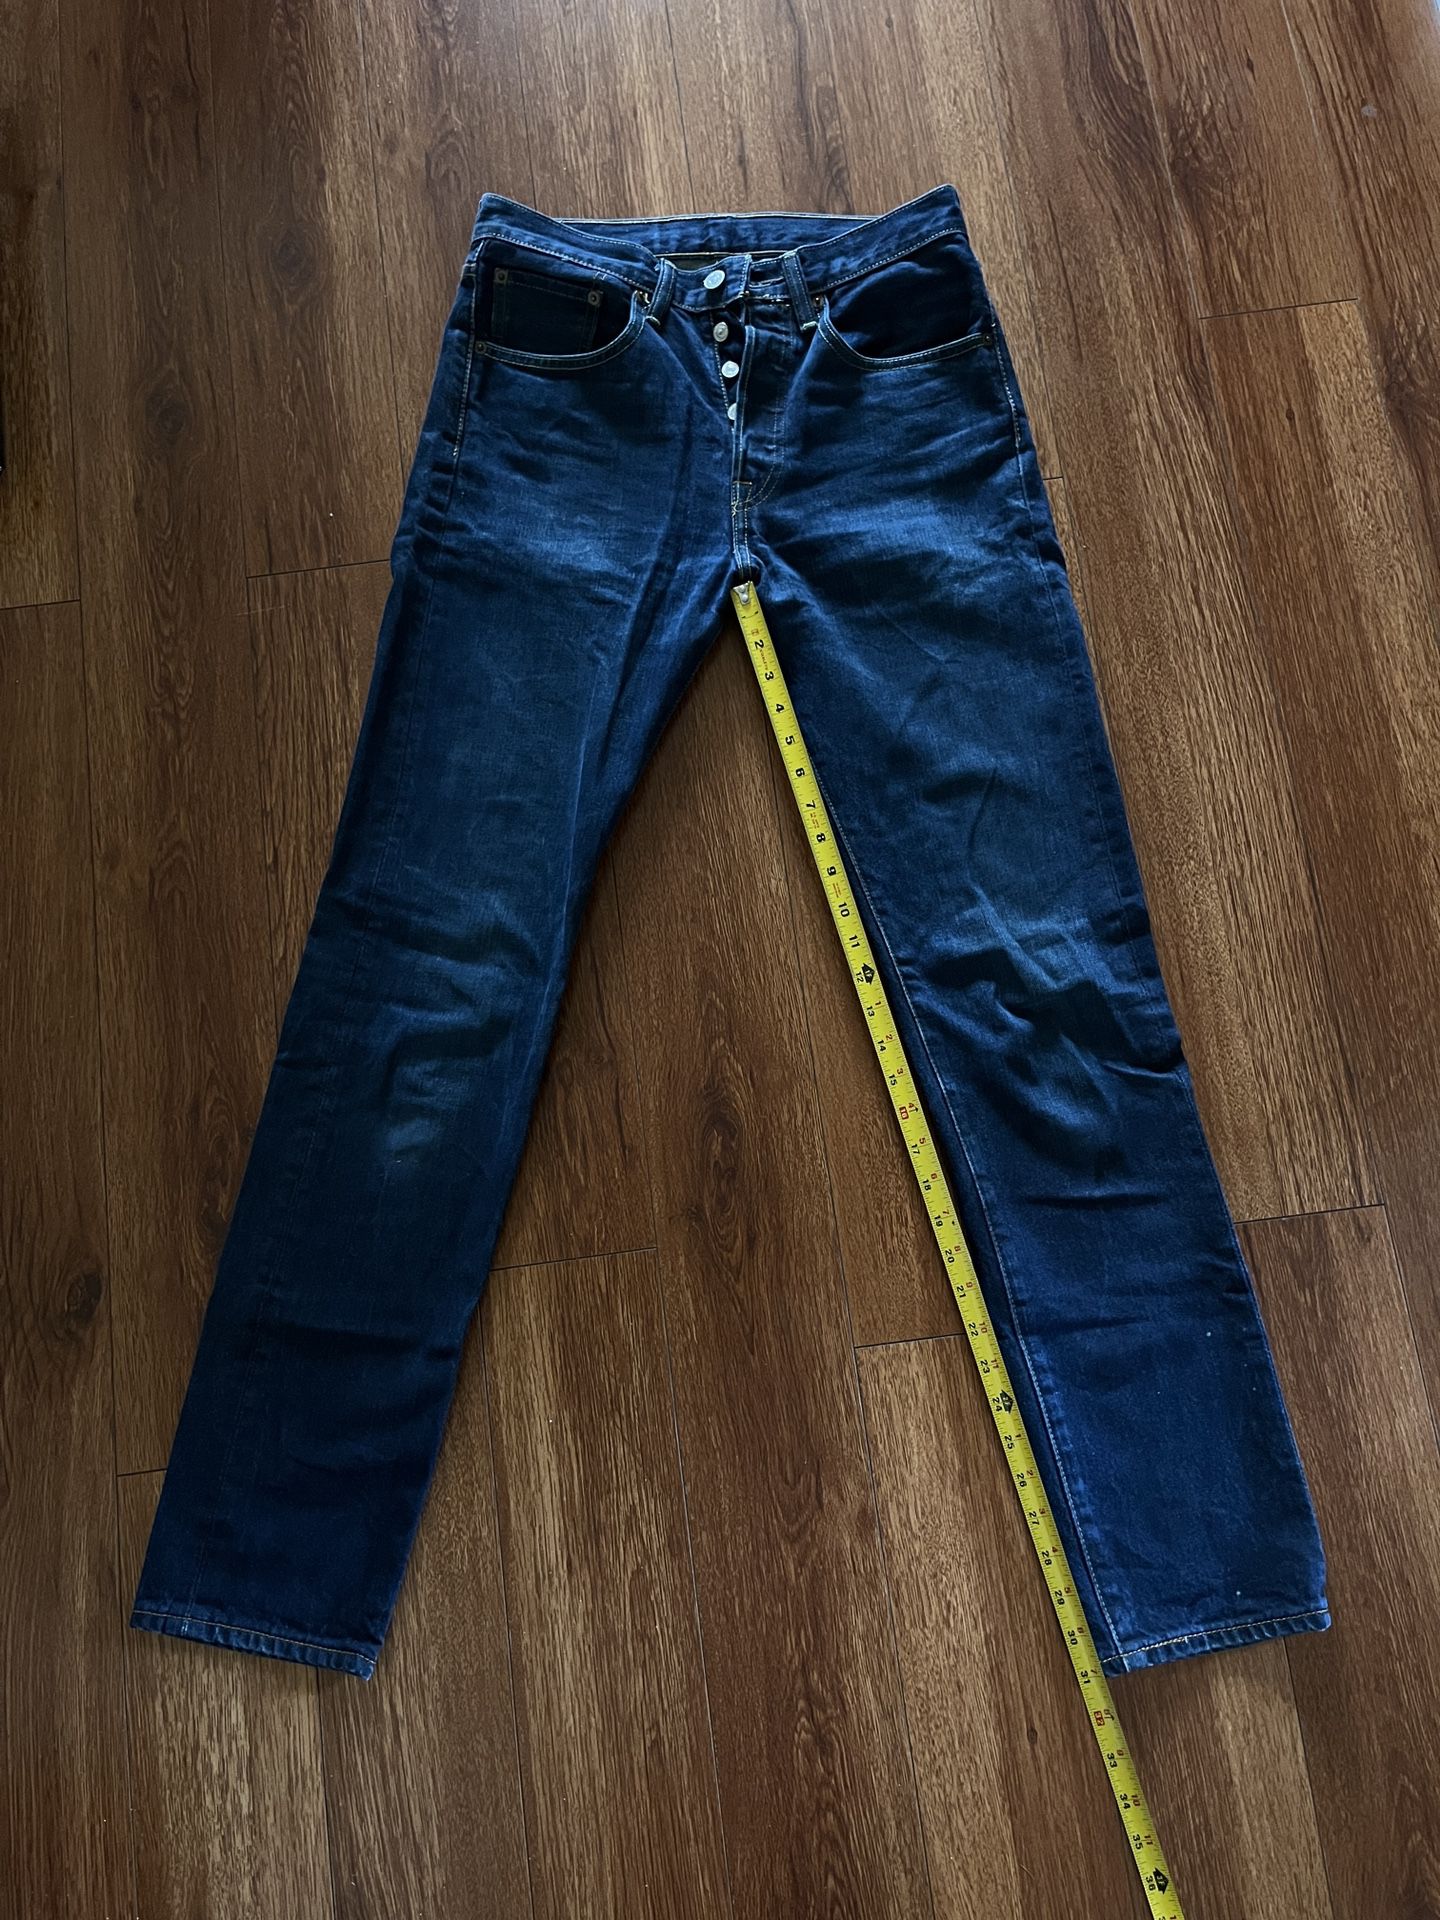 Levis 511 men’s jeans 29x34